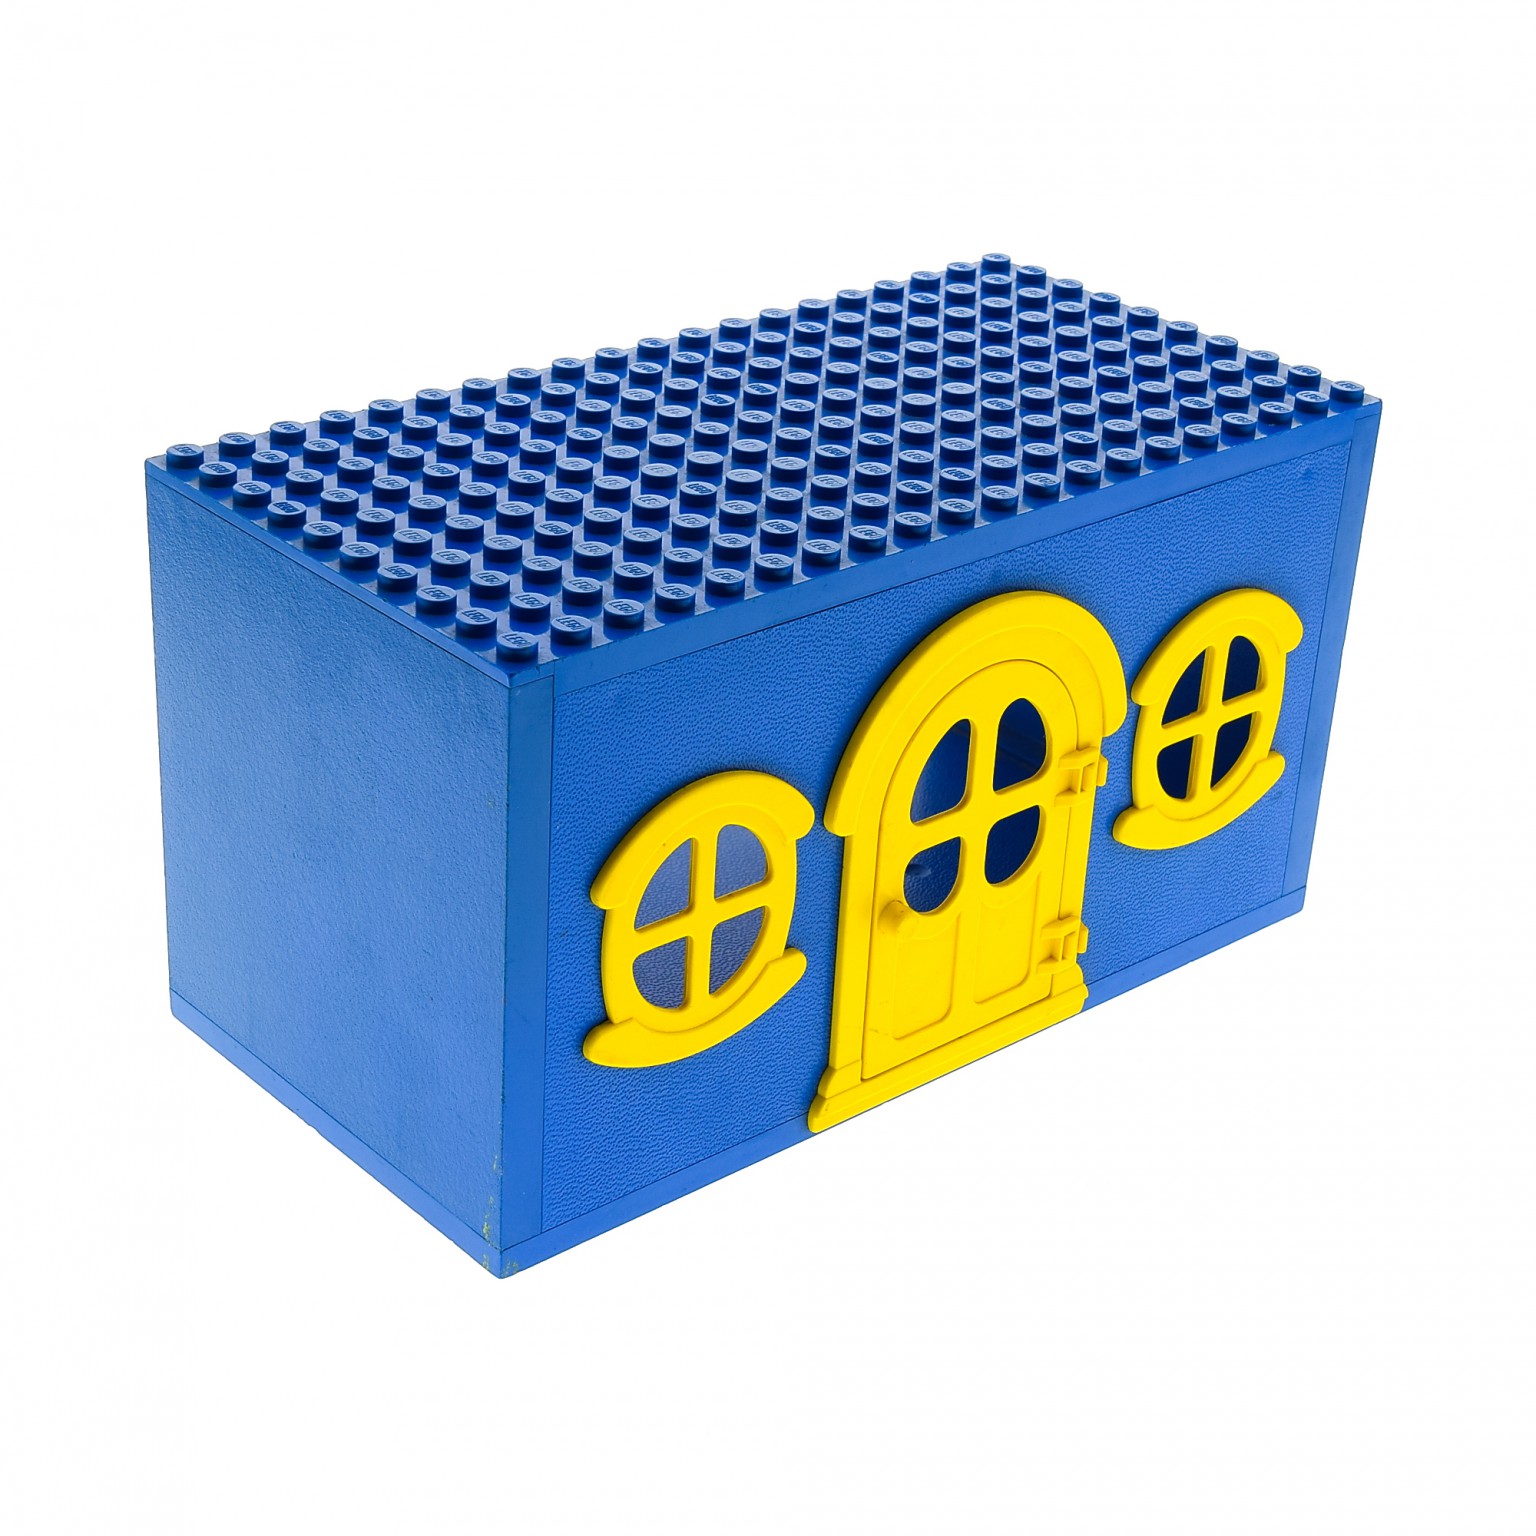 Lego--x637c01-- Gebäudewand- Blau Fenster Gelb 2x 6 x 7 Fabuland 